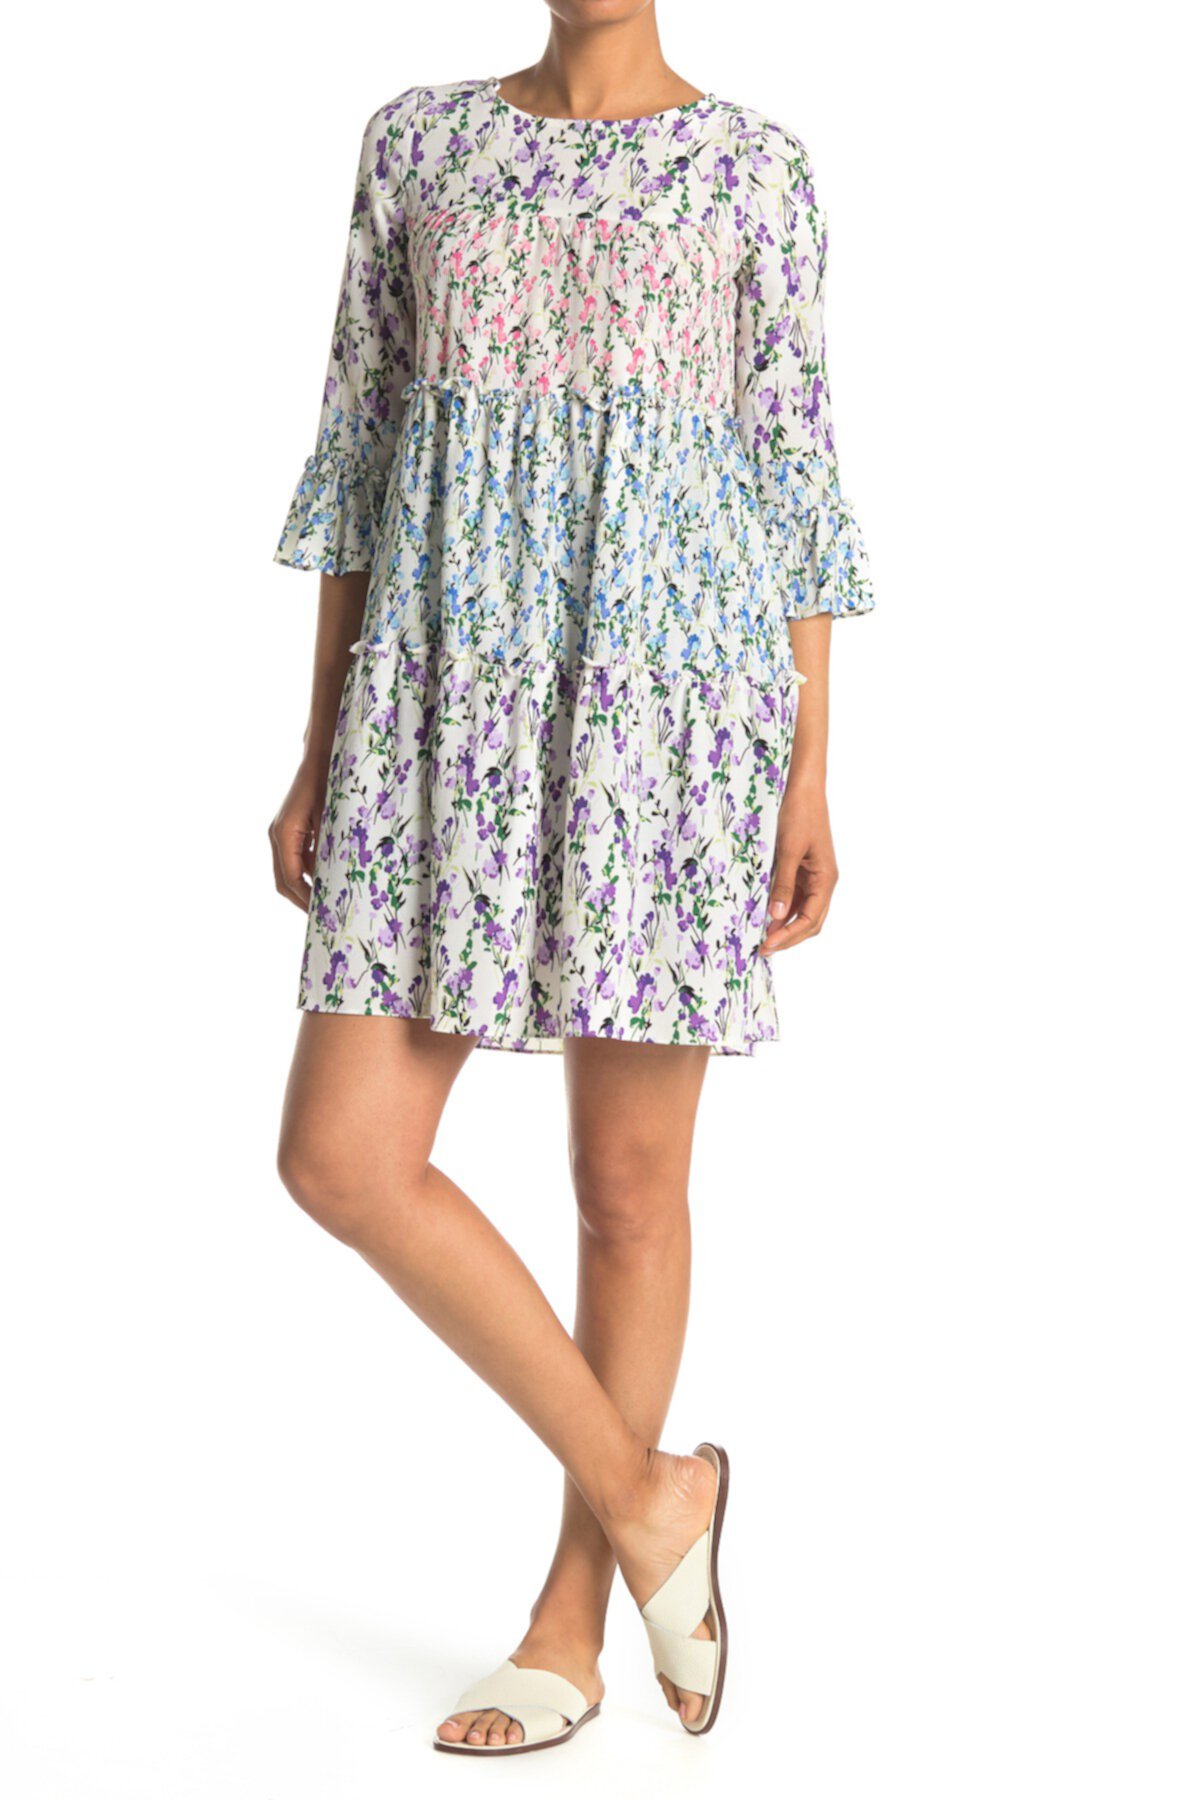 Мини-платье трапеции с расклешенными рукавами и цветочным принтом Gabby Skye